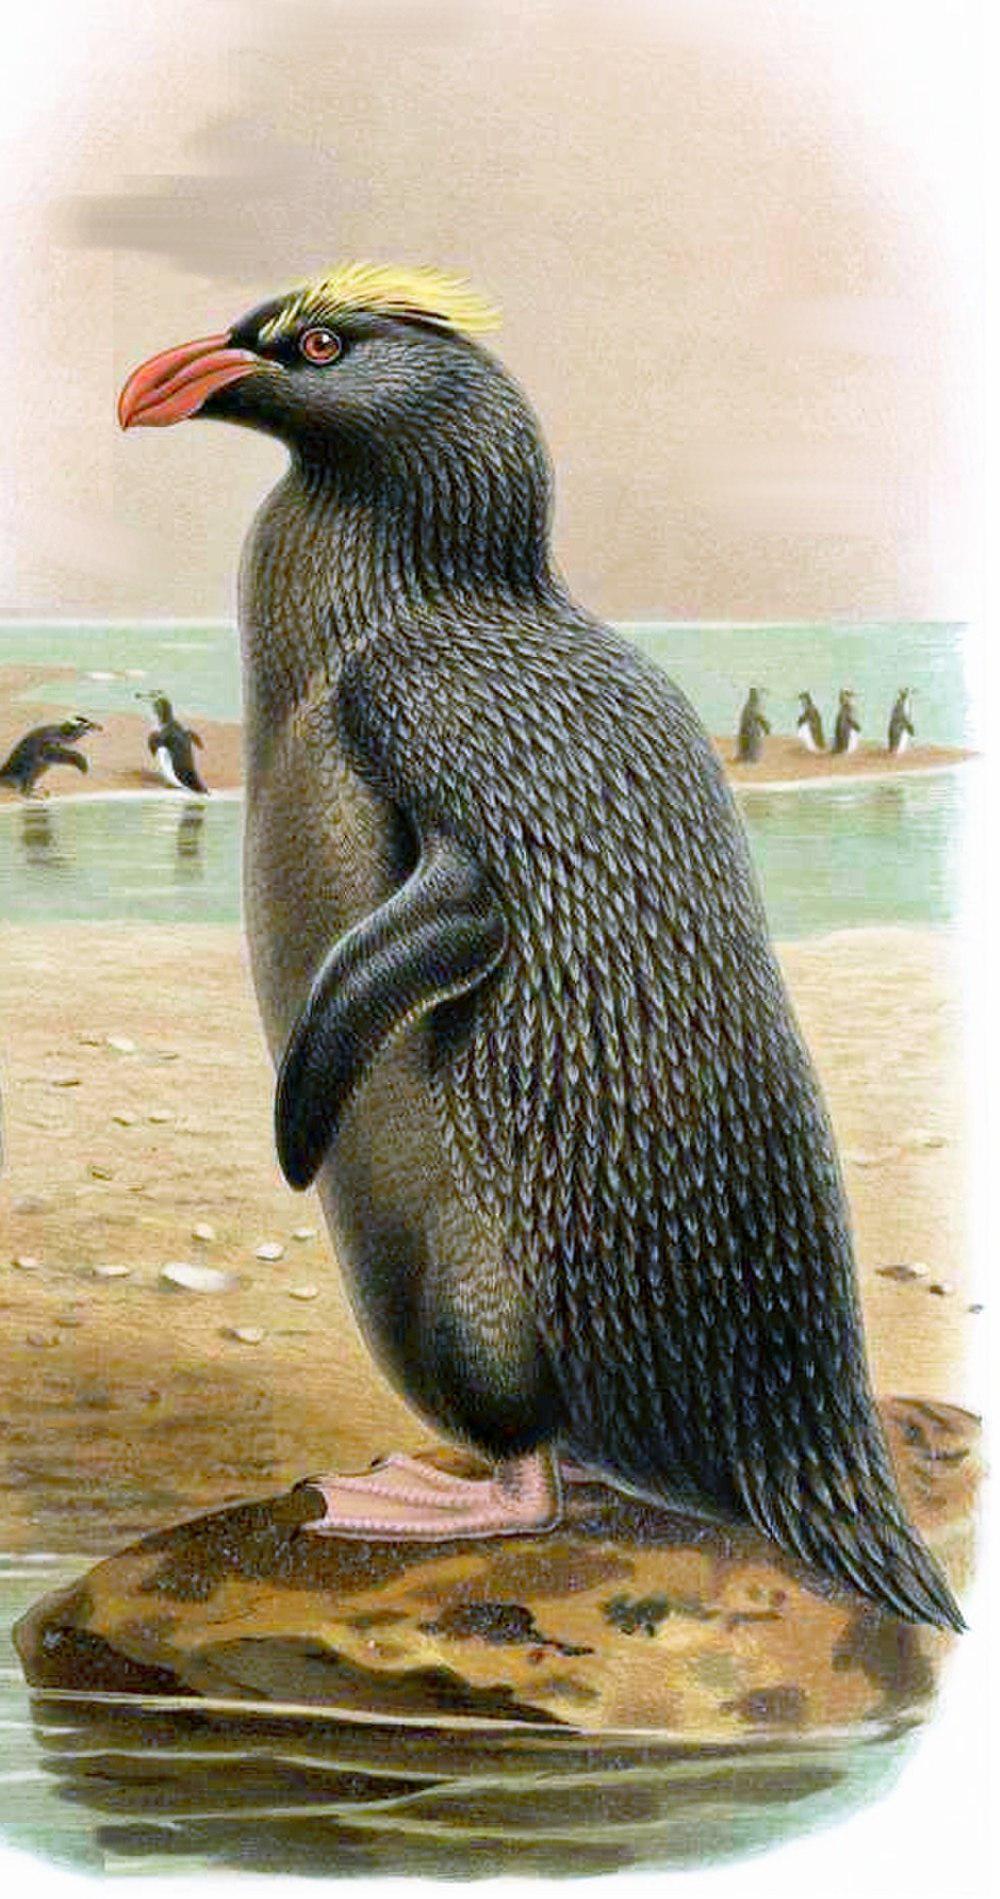 翘眉企鹅 / Erect-crested Penguin / Eudyptes sclateri